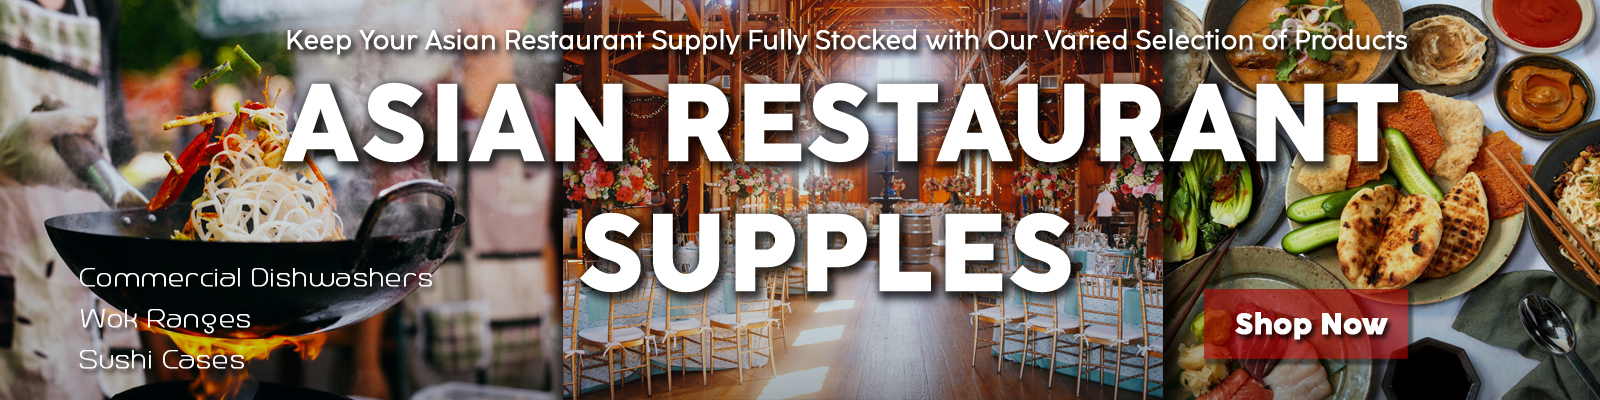 Asian Restaurant Equipment, Asian Restaurant Supplies